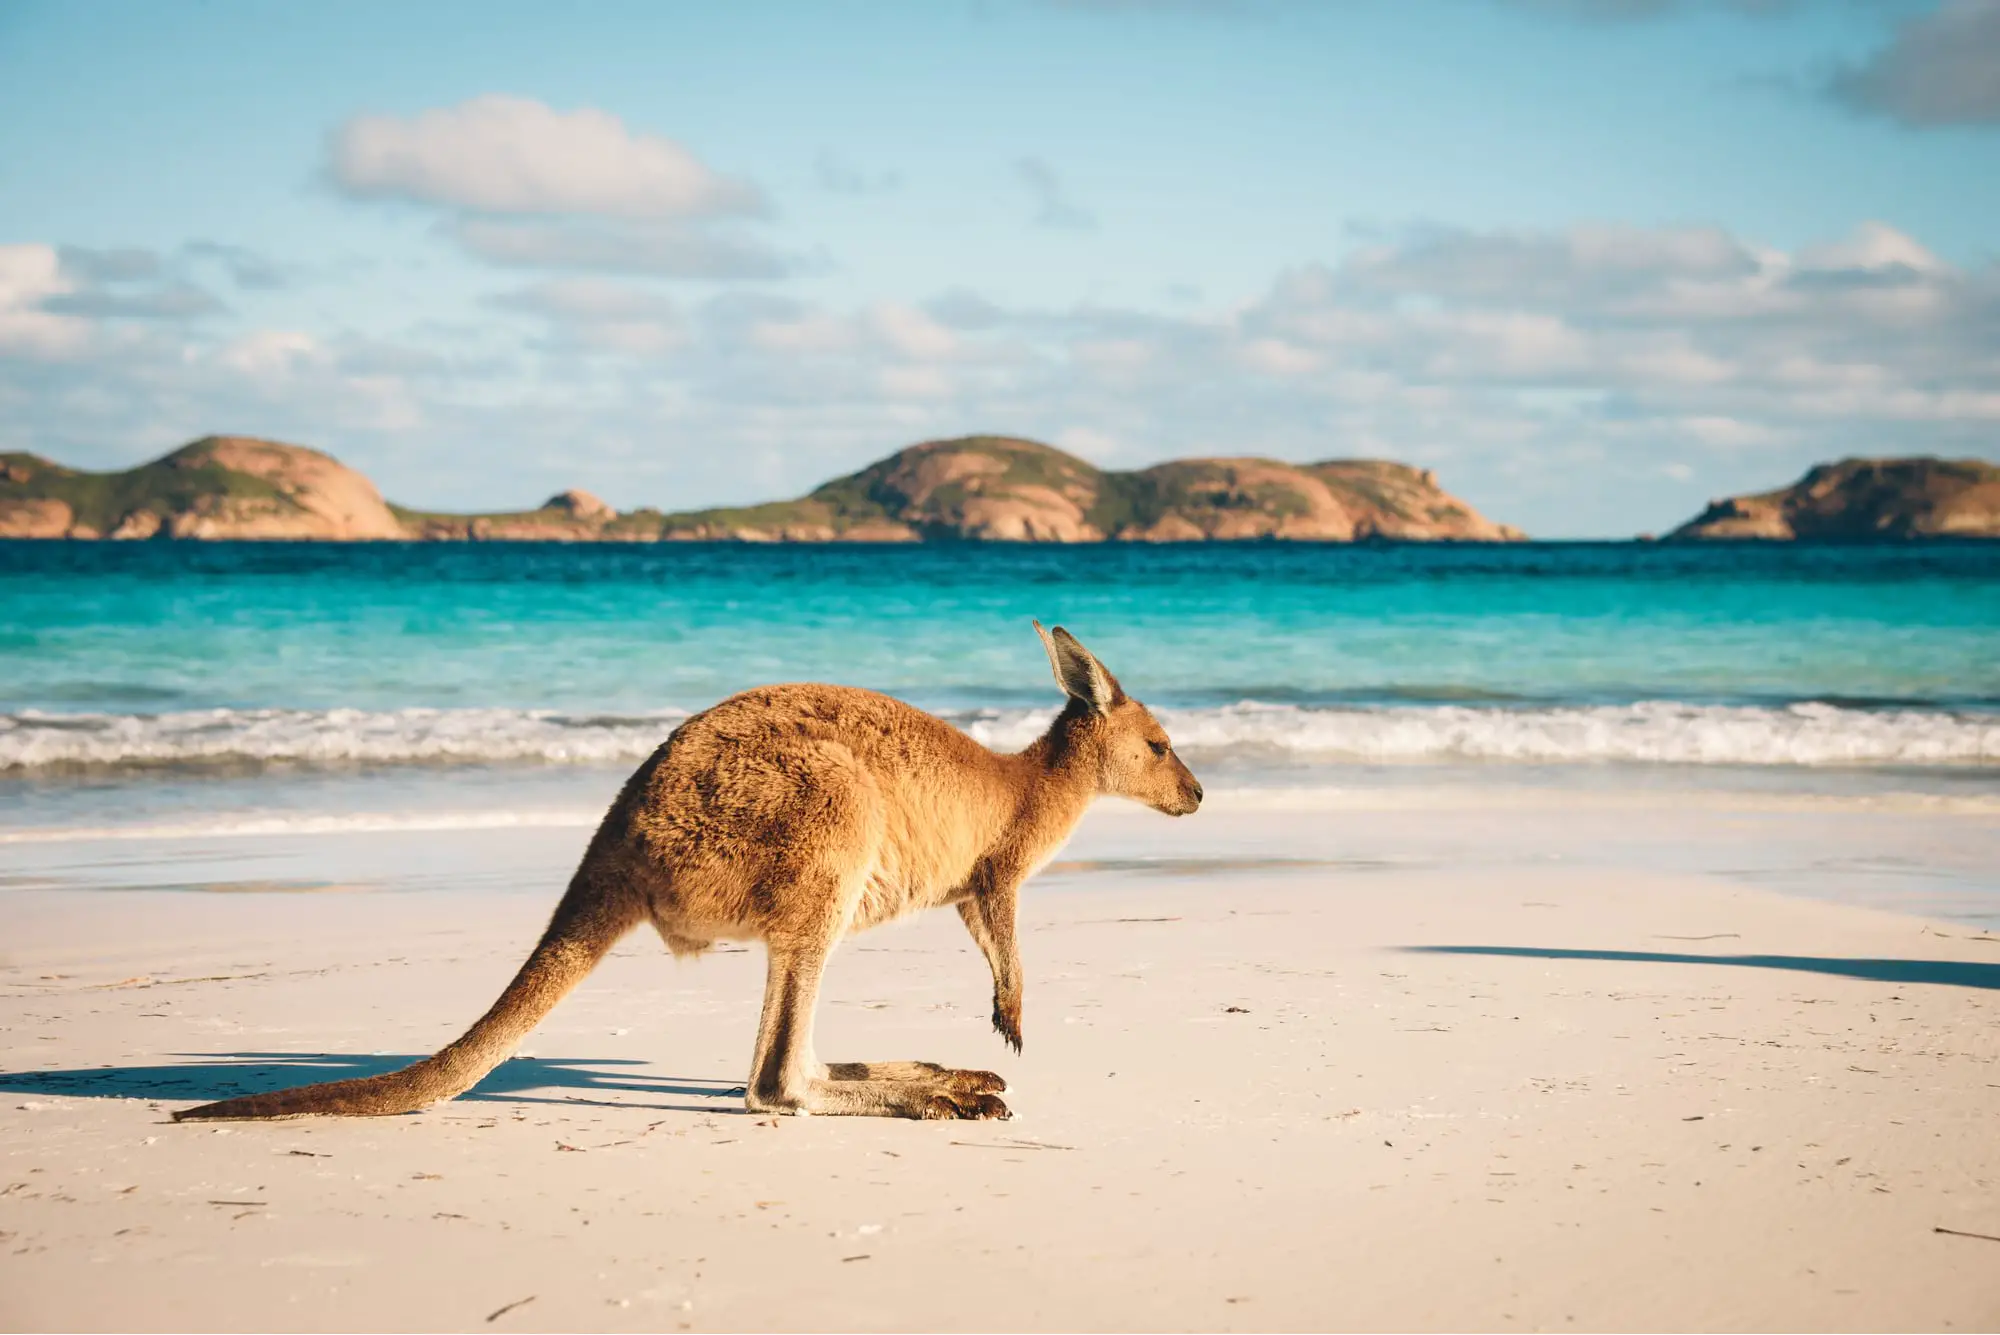 A kangaroo on an australian beach with blue